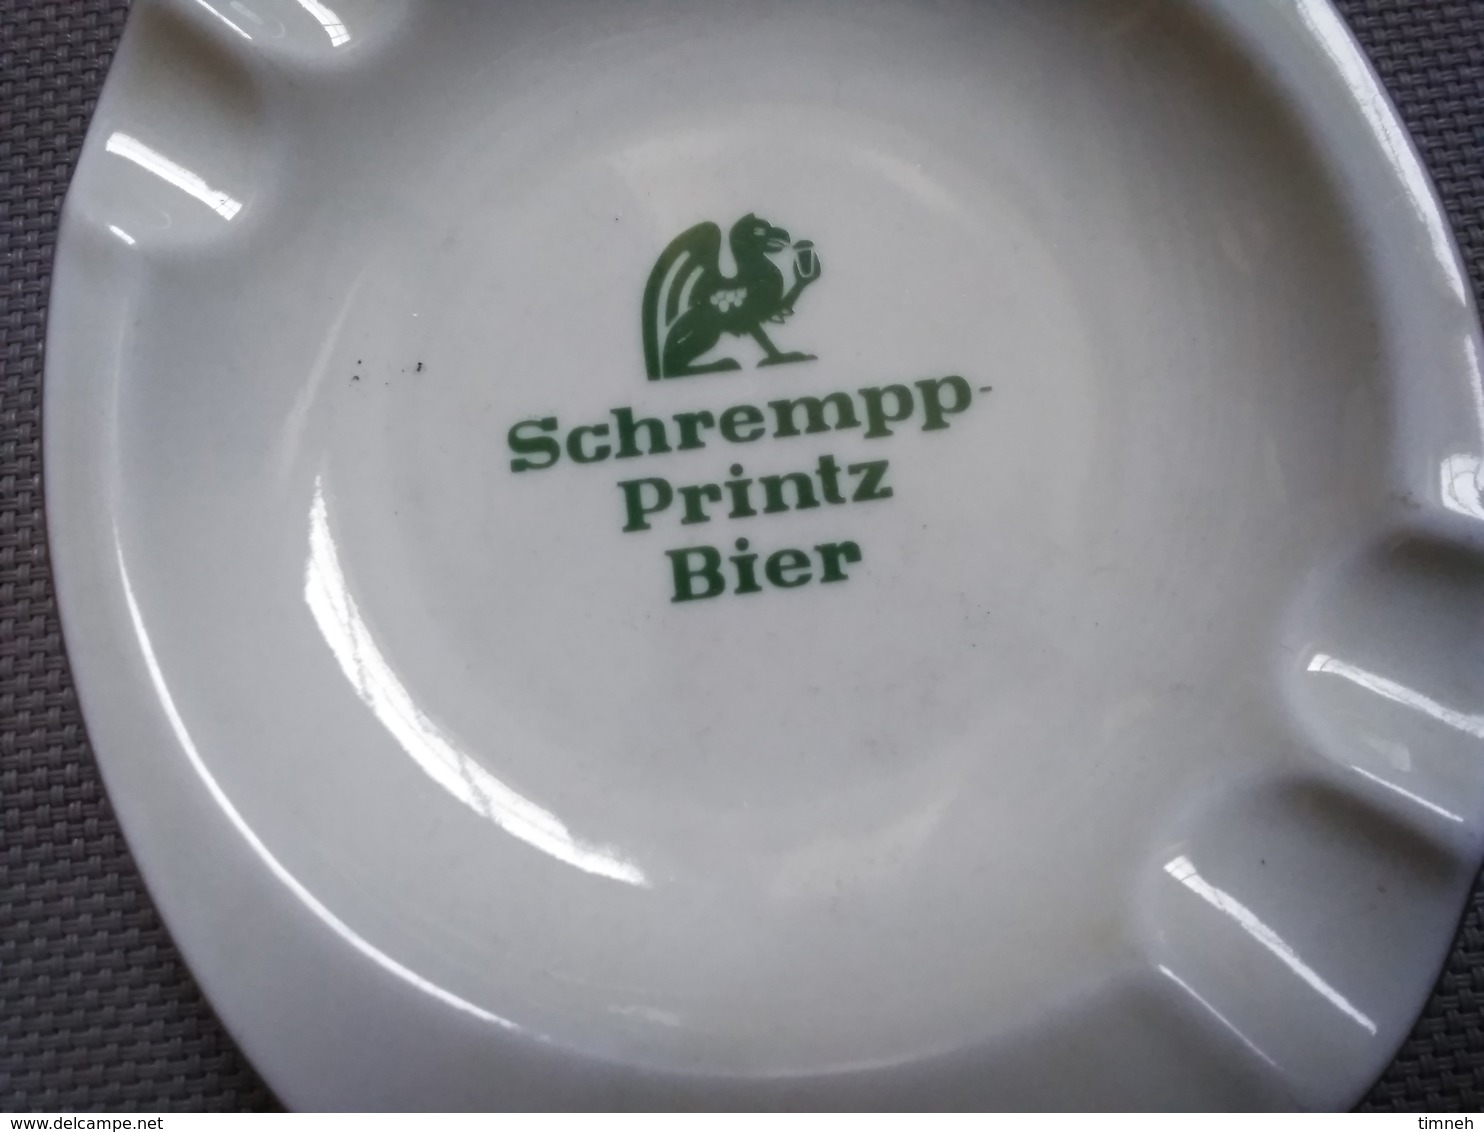 FAÏENCE EMIL SAHM PLANKENHAMMER FLOSS BAVARIA GERMANY - SCHREMPP PRINTZ BIER - CENDRIER 15x12cm - FAÏENCE - Ceniceros